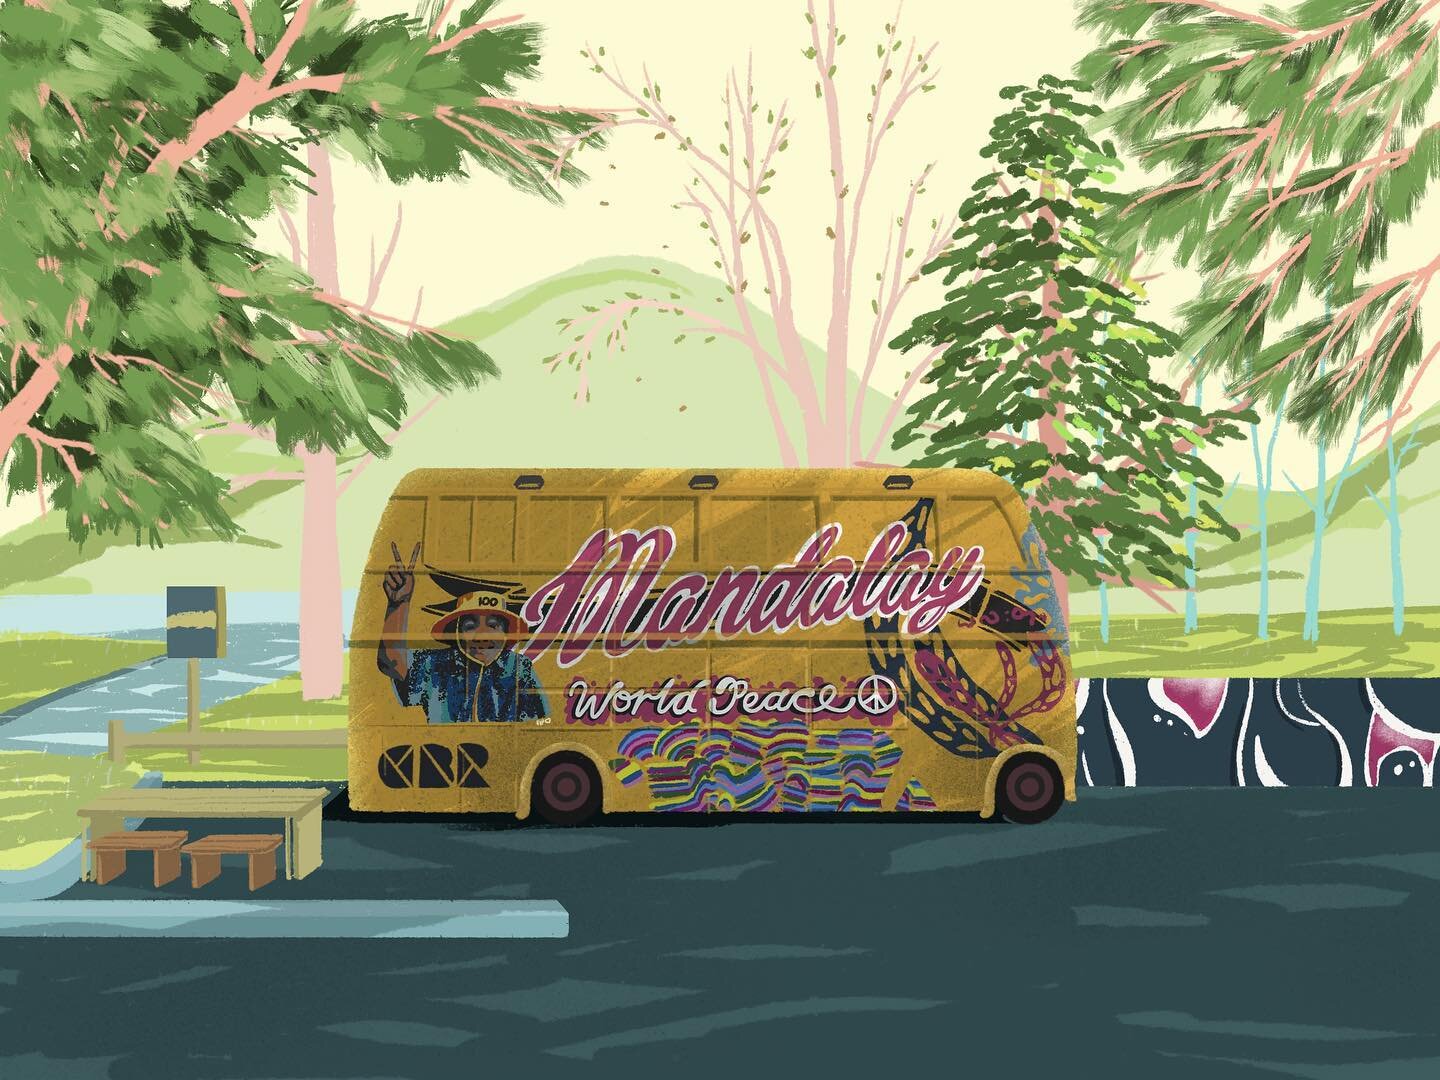 The Mandalay Bus